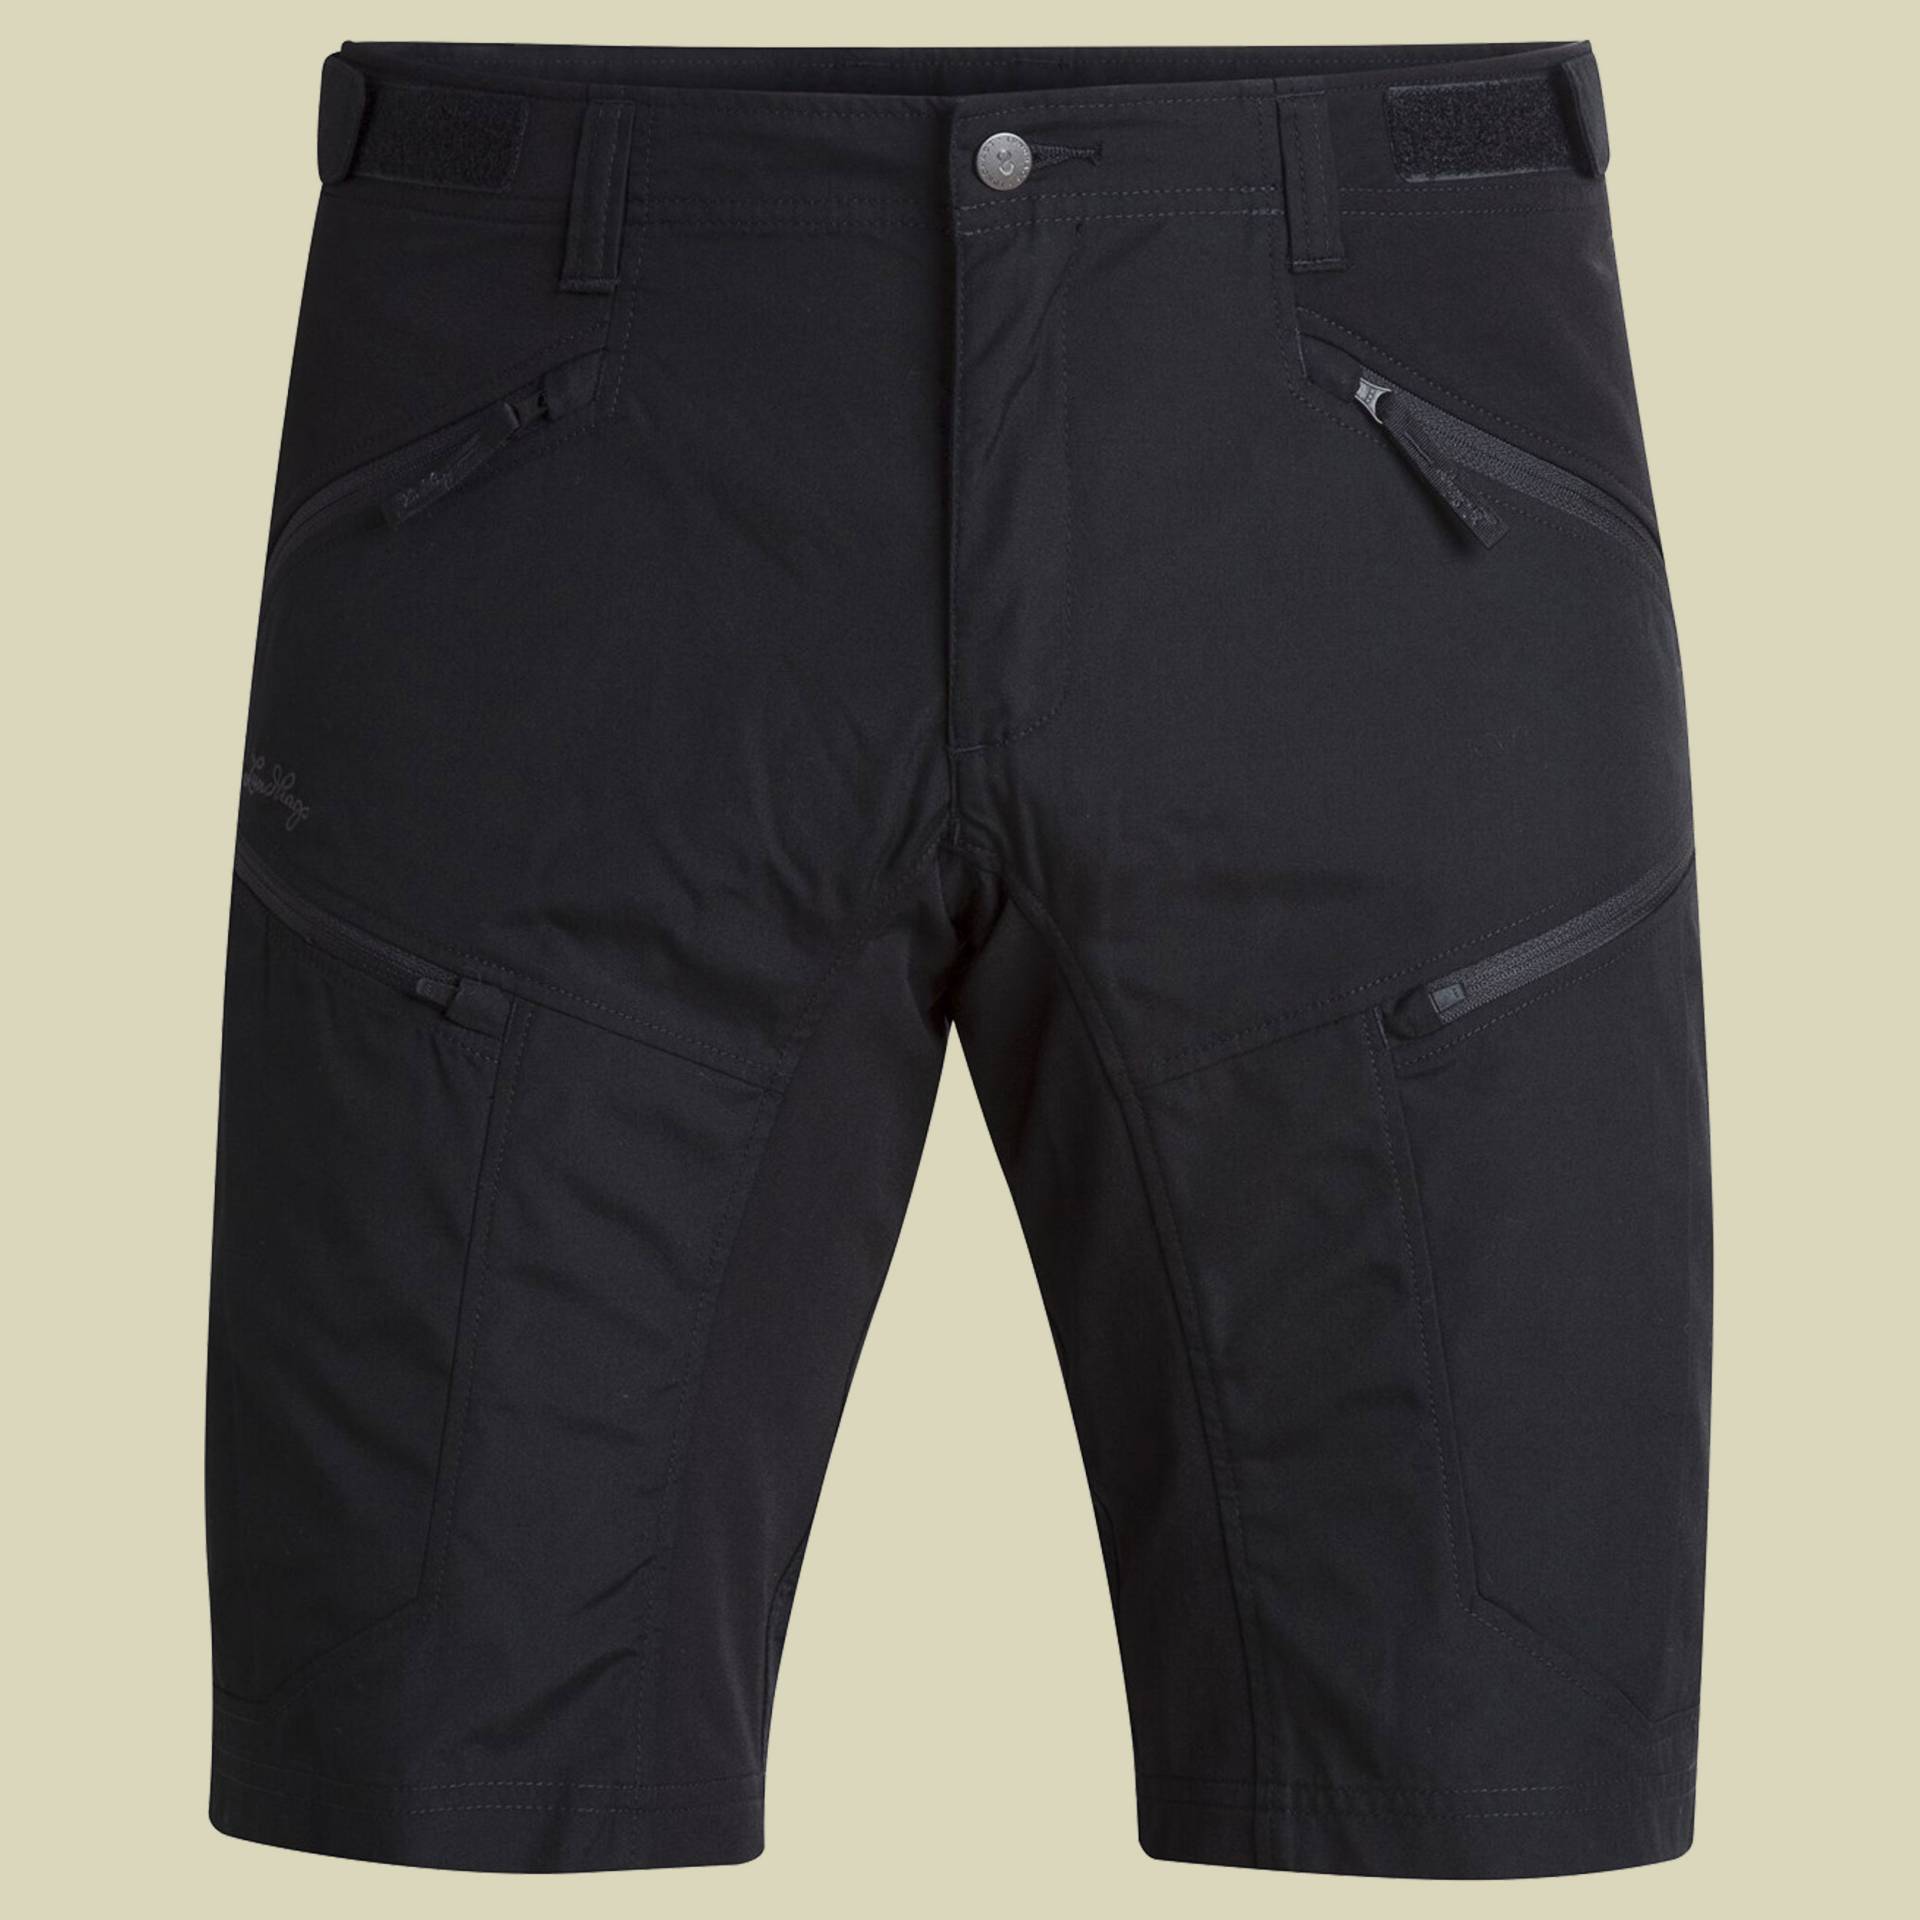 Makke II Shorts Men Größe 50 Farbe black von Lundhags